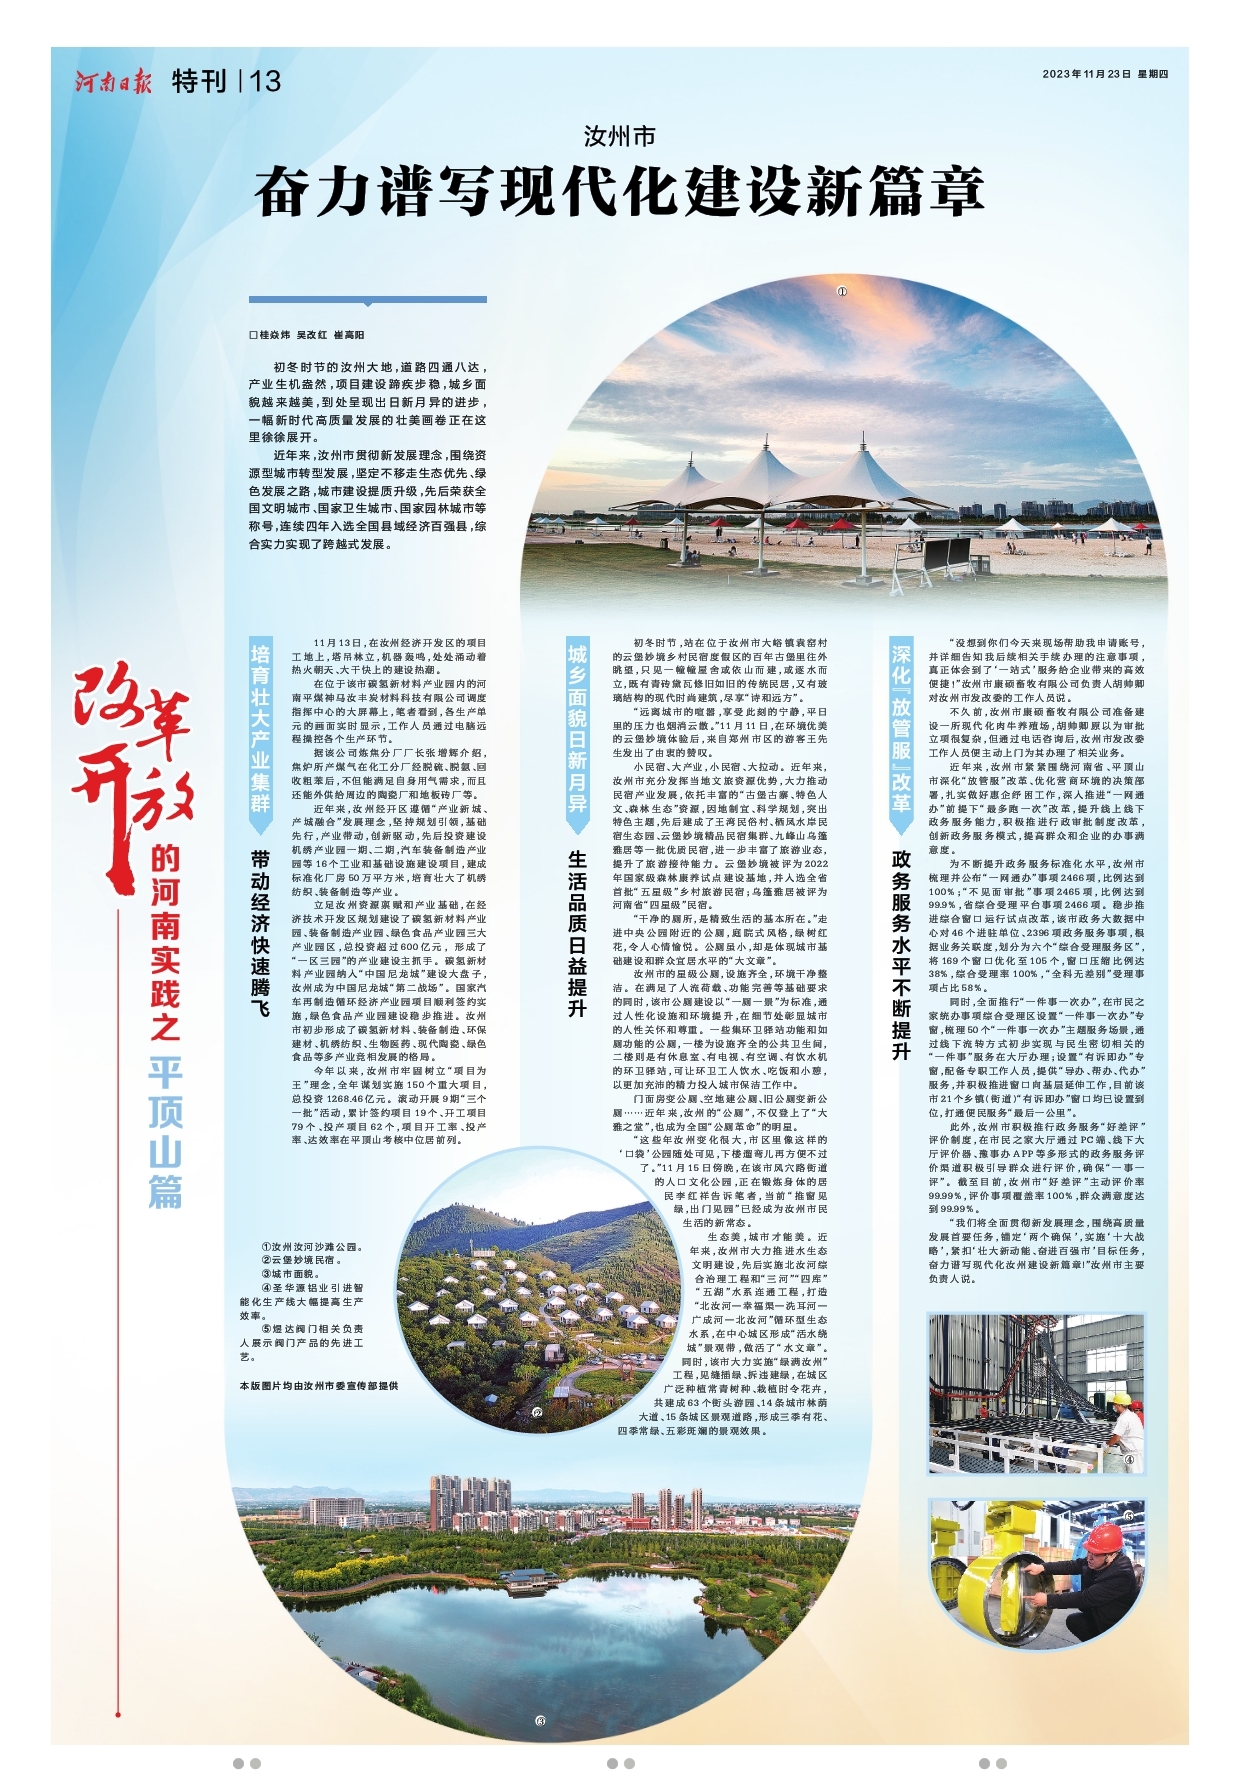 《河南日报》今日推出“改革开放的河南实践”平顶山篇：转出新天地 “平”添新气象